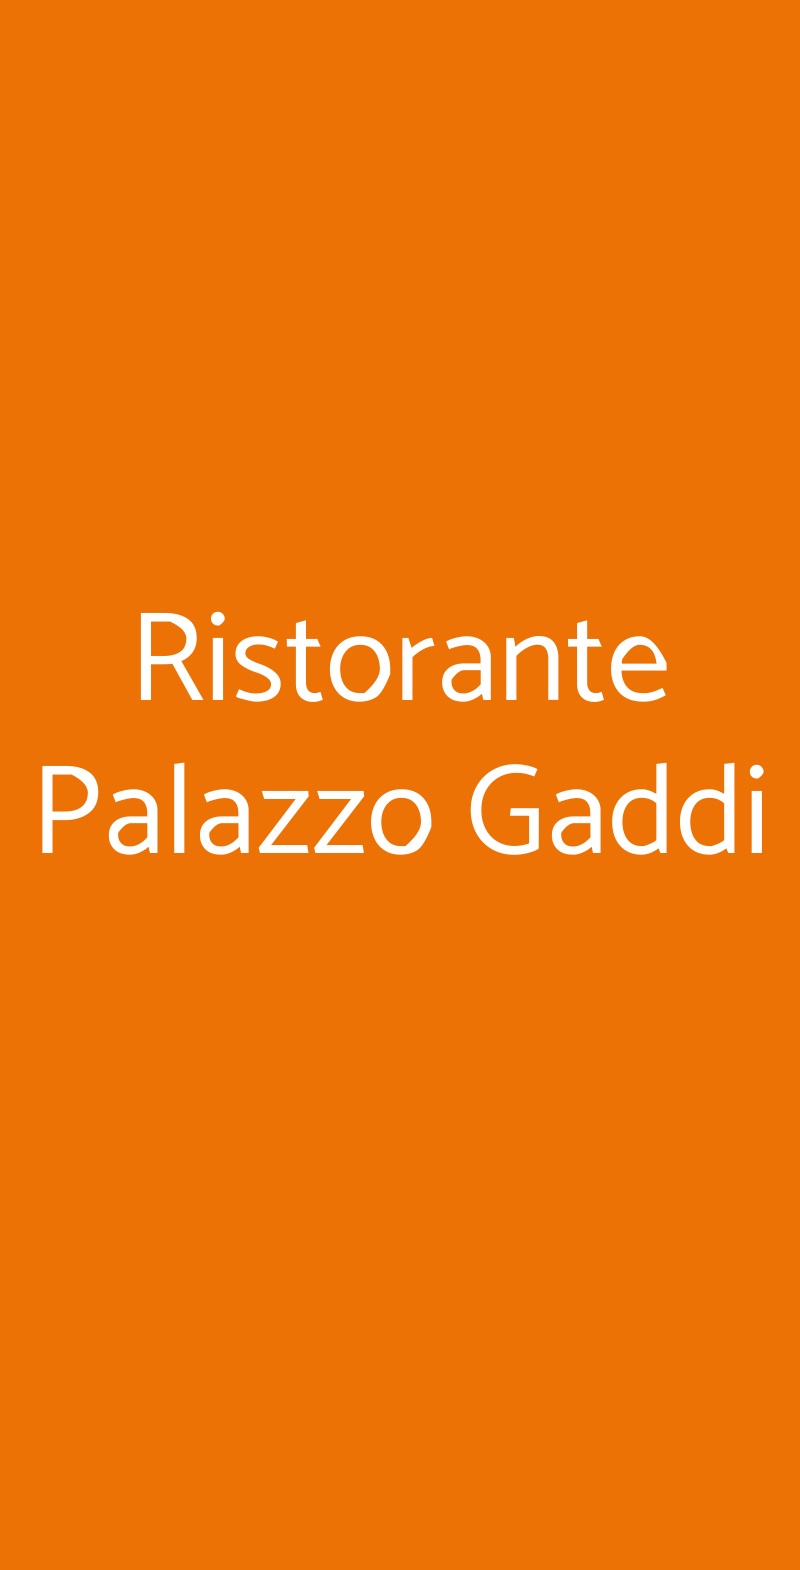 Ristorante Palazzo Gaddi Firenze menù 1 pagina